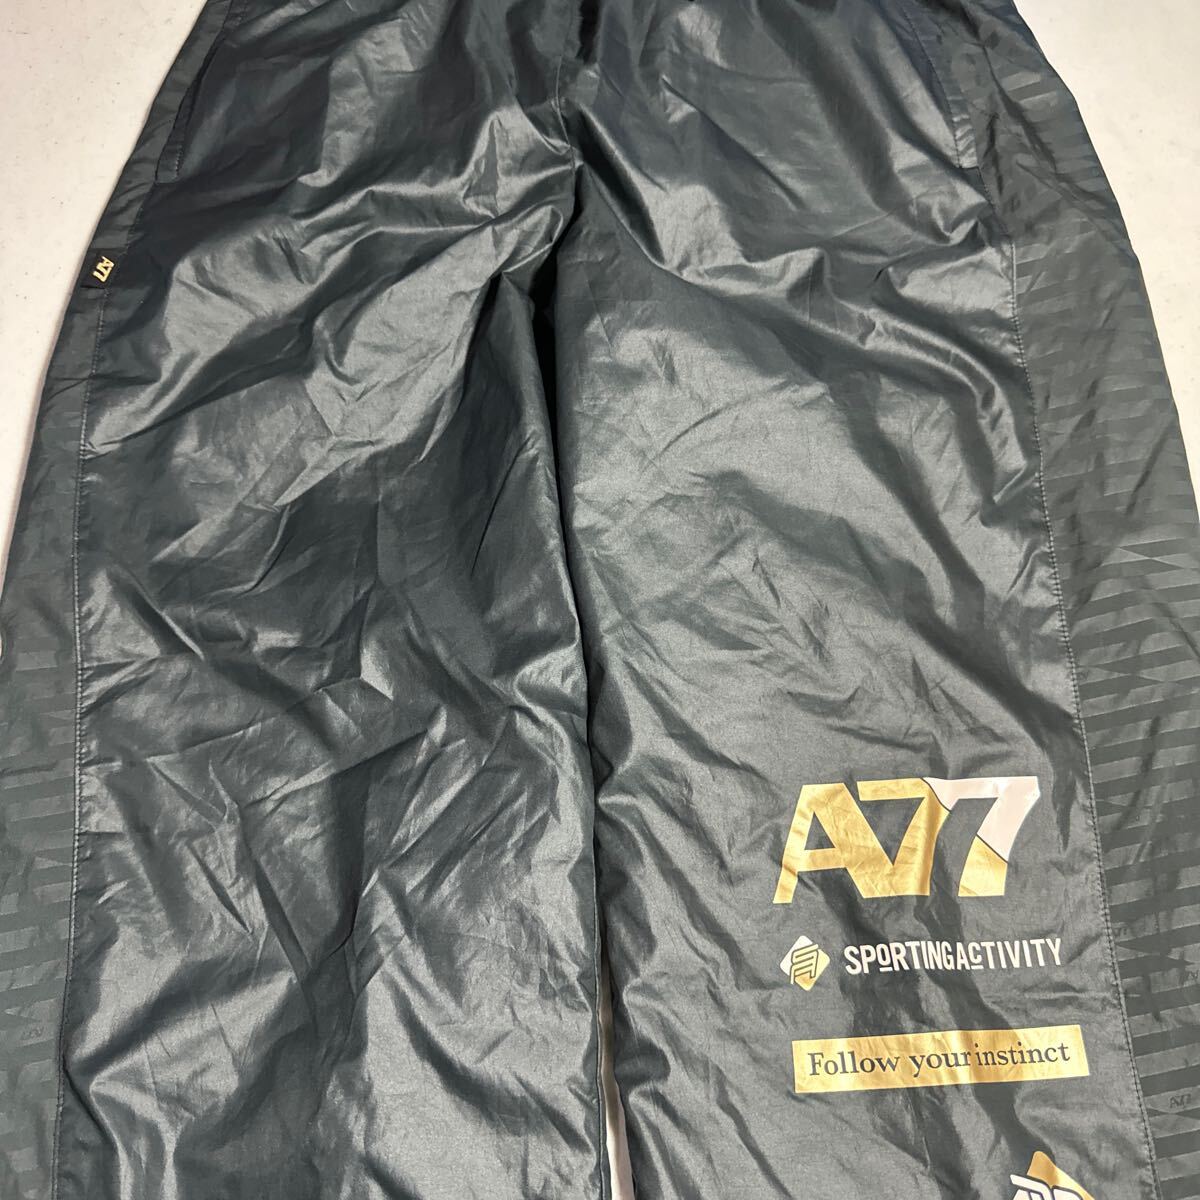  Asics asics A77 спорт тренировка для подкладка есть pi стерео брюки 2XO размер 